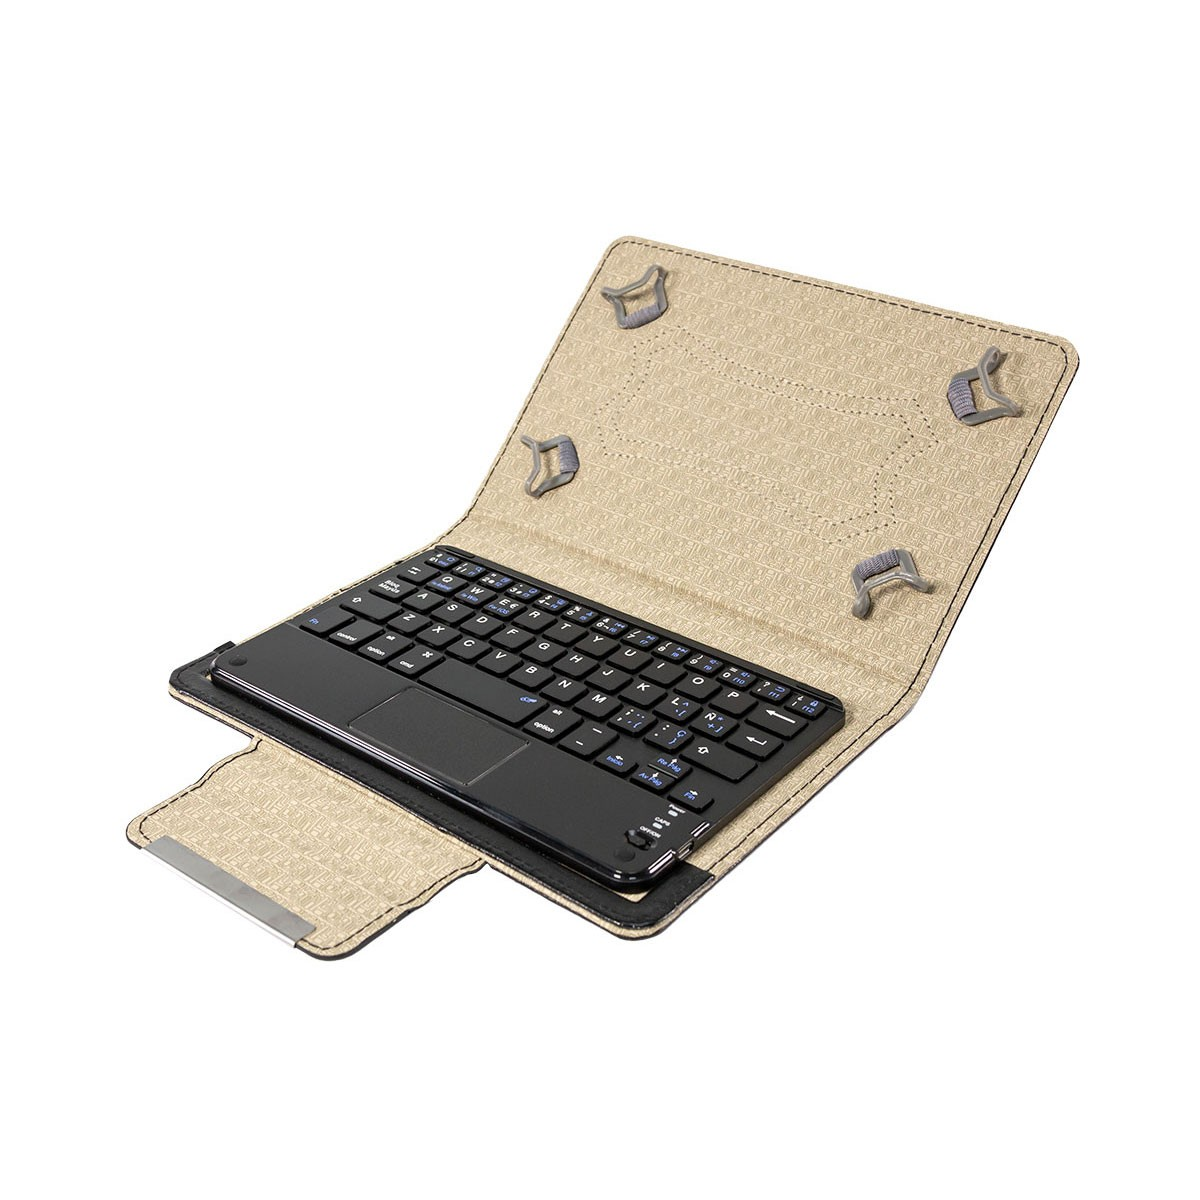 Talius Cv3005 Funda con teclado touchpad para tablet zaphyr 8001w pantallas de 8. bluetooth y enganches adaptables. compatible android windows ios. negro 8 layout